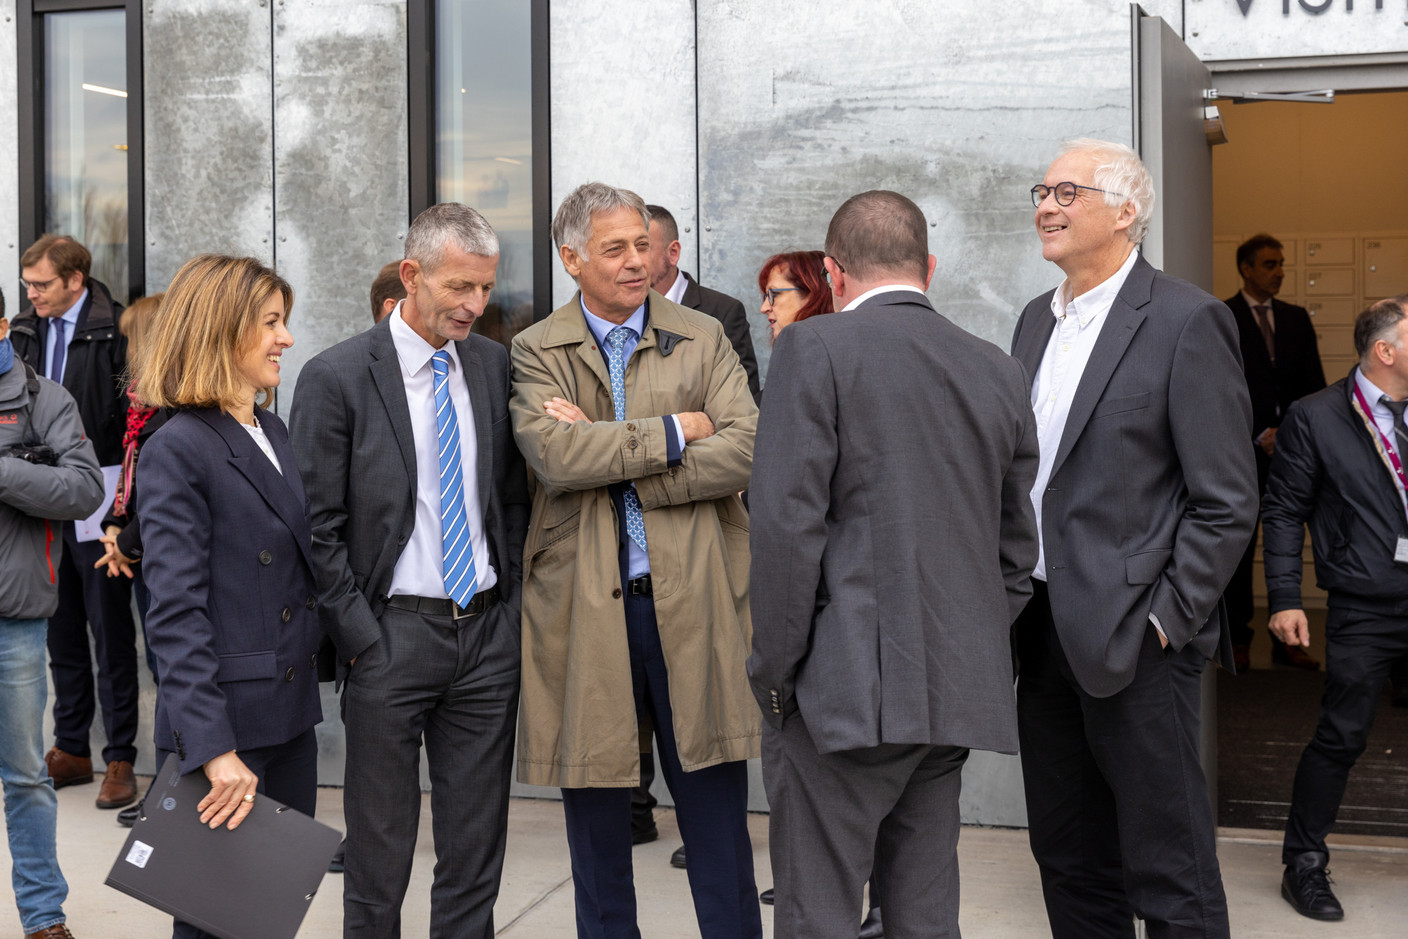 Le ministre de l’Intérieur, Henri Kox, ainsi que l’équipe de l’Administration des bâtiments publics, étaient présents pour accueillir S.A.R. le Grand-Duc. (Photo: Romain Gamba/Maison Moderne)